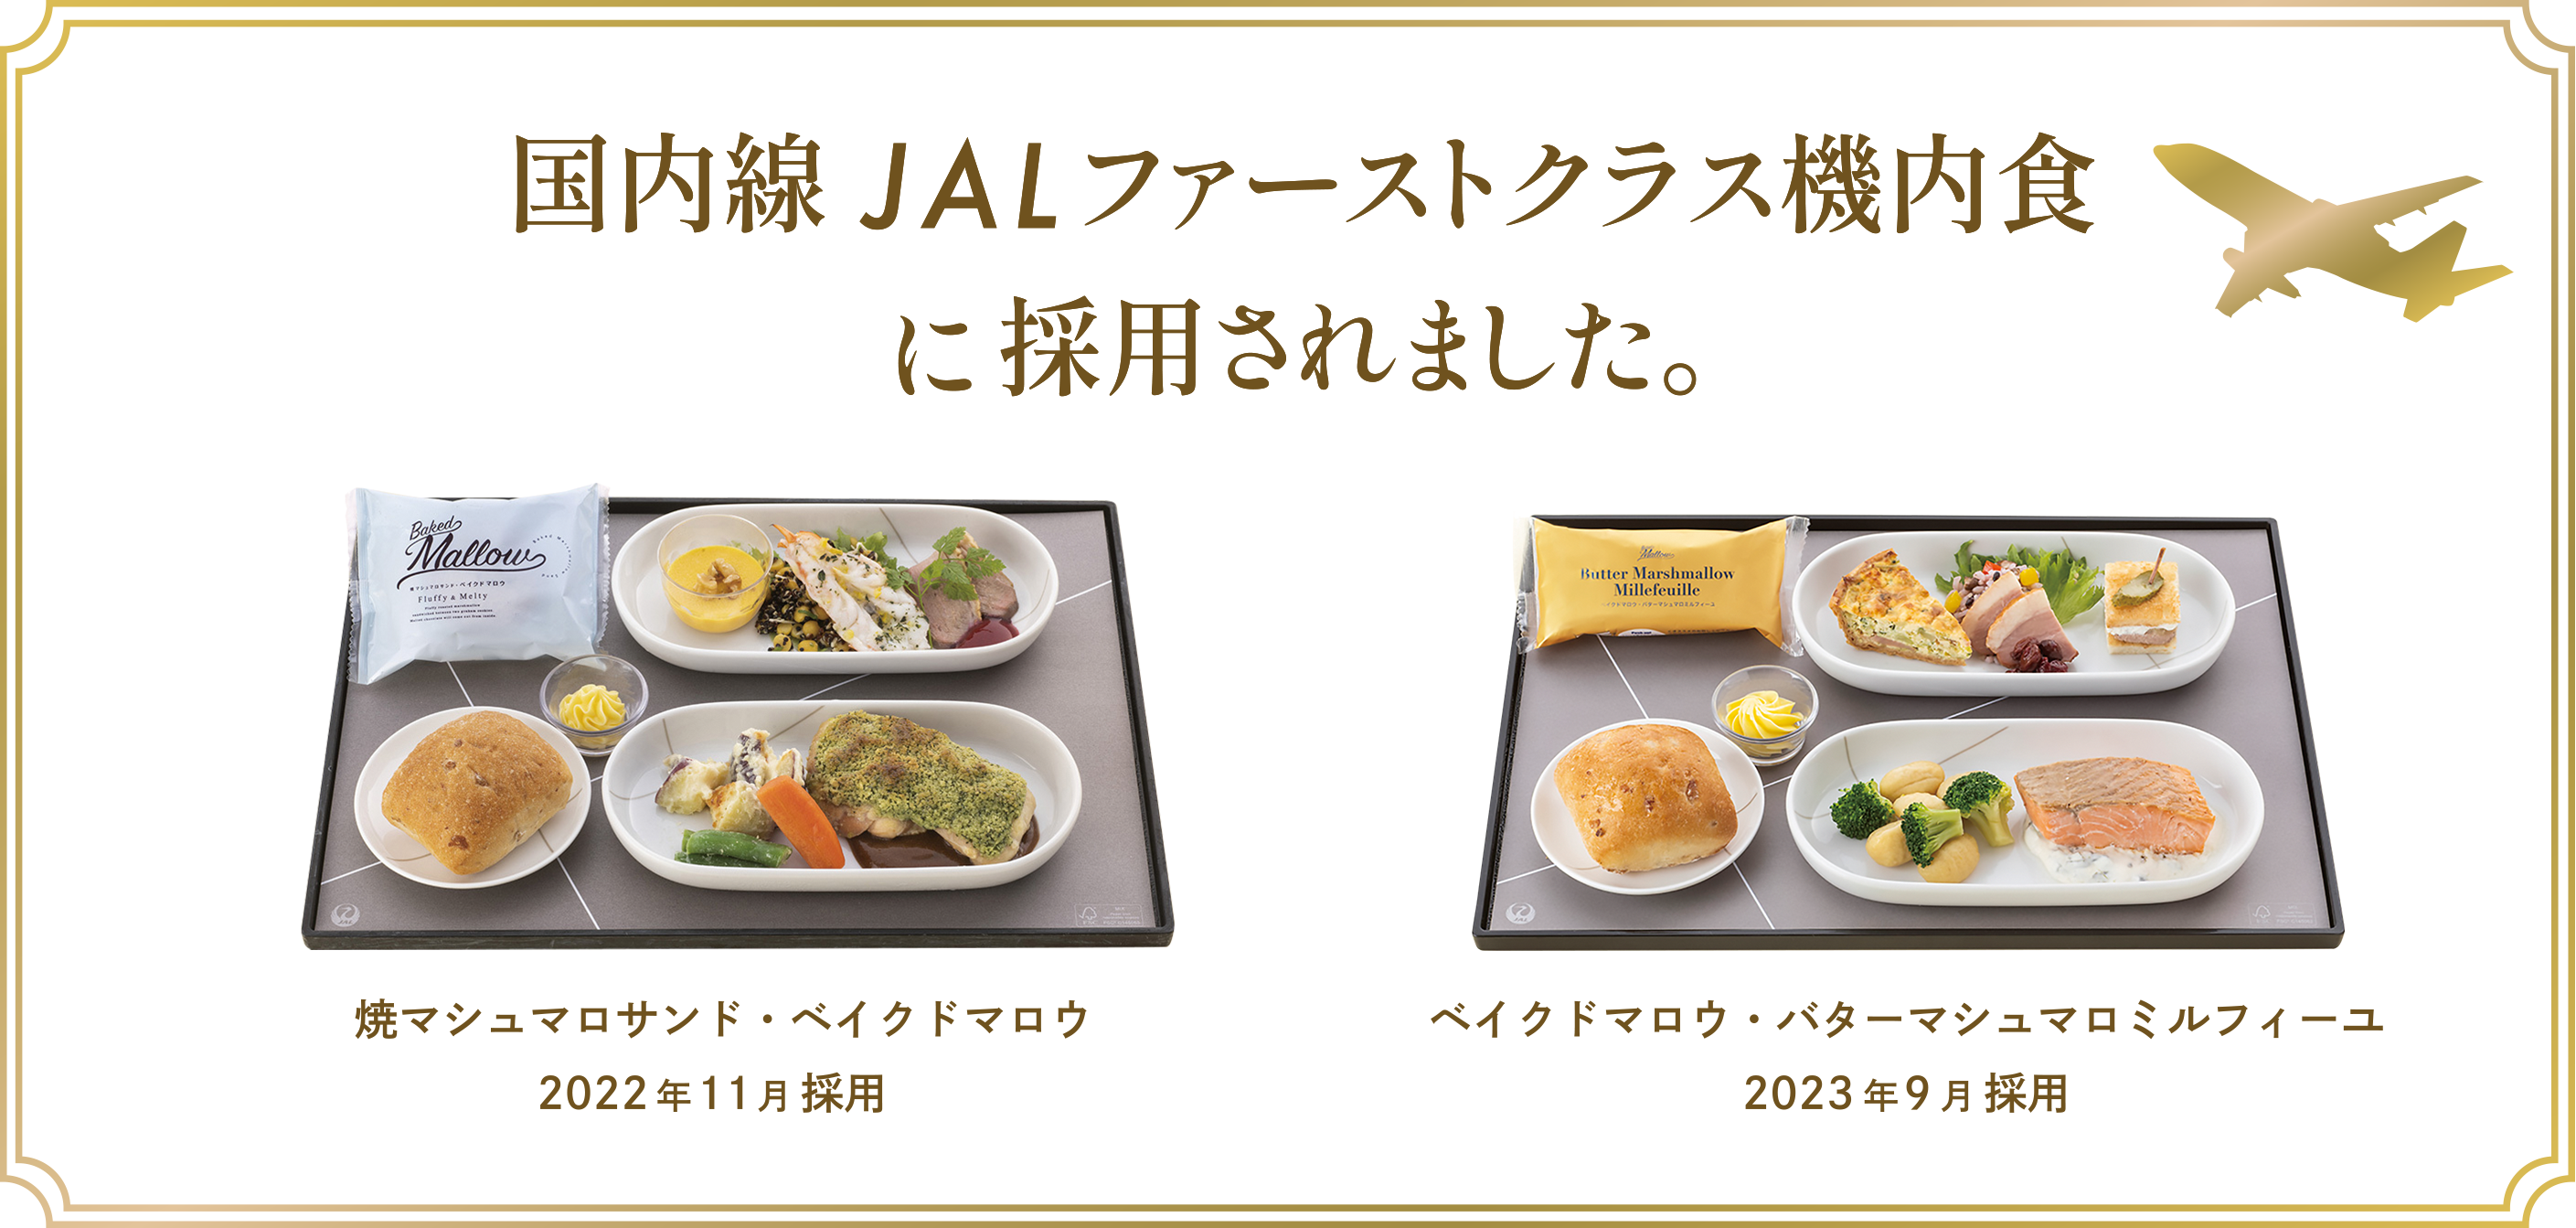 JAL国内線ファーストクラス機内食に採用されました。焼マシュマロサンド・ベイクドマロウ2022年11月採用、ベイクドマロウ・バターマシュマロミルフィーユ2023年9月採用。